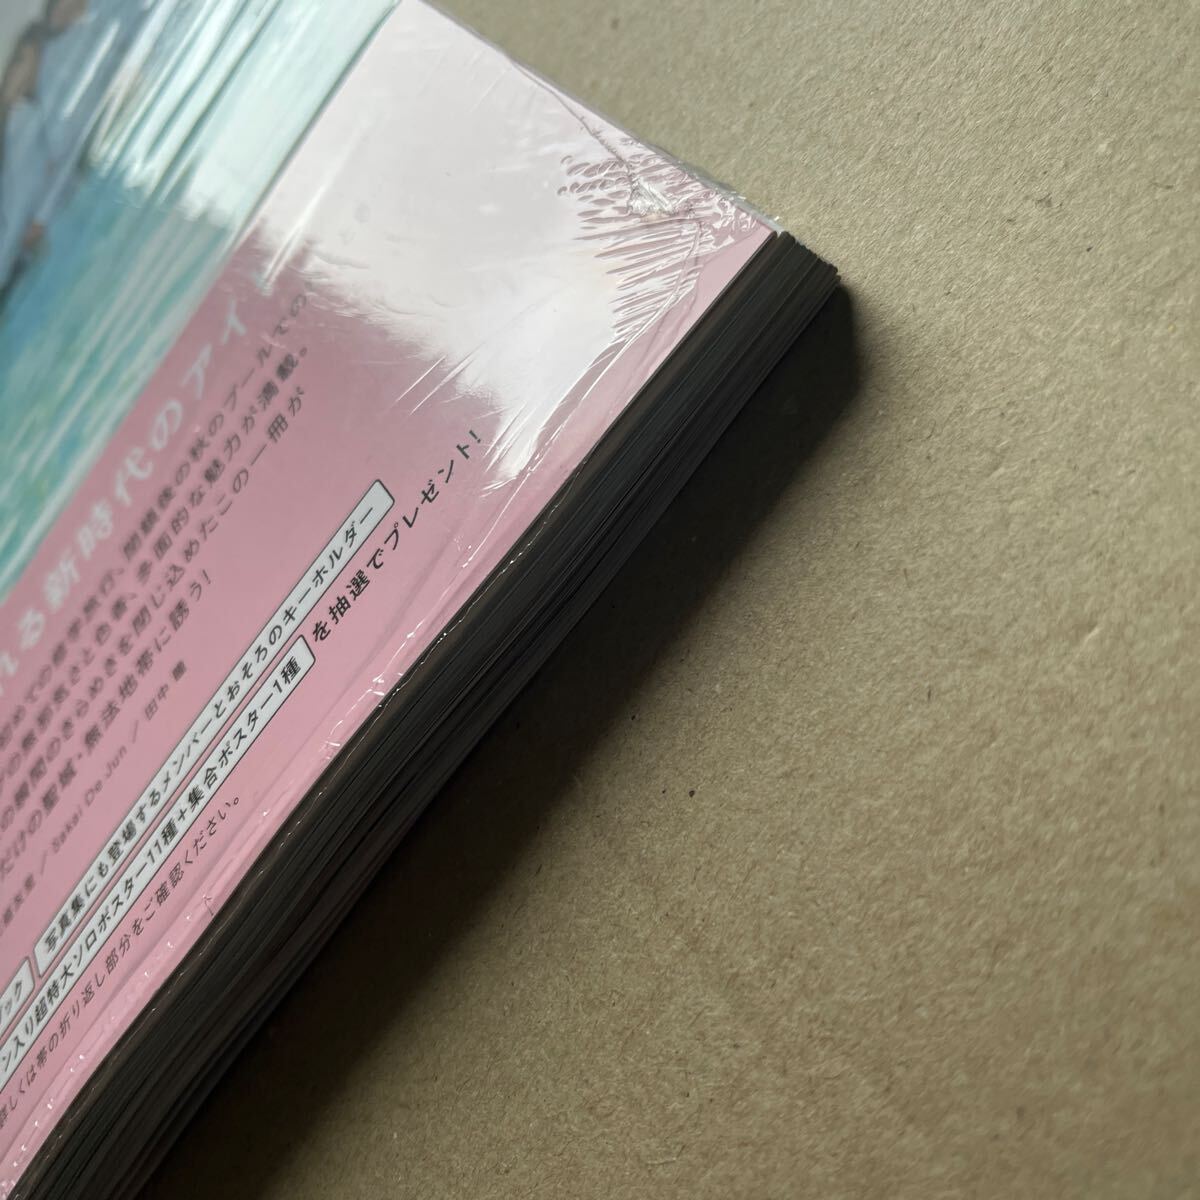 乃木坂46 5期生 写真集「あの頃、乃木坂にいた」 通常盤 封入ポスター、応募券なし 未読品_画像4